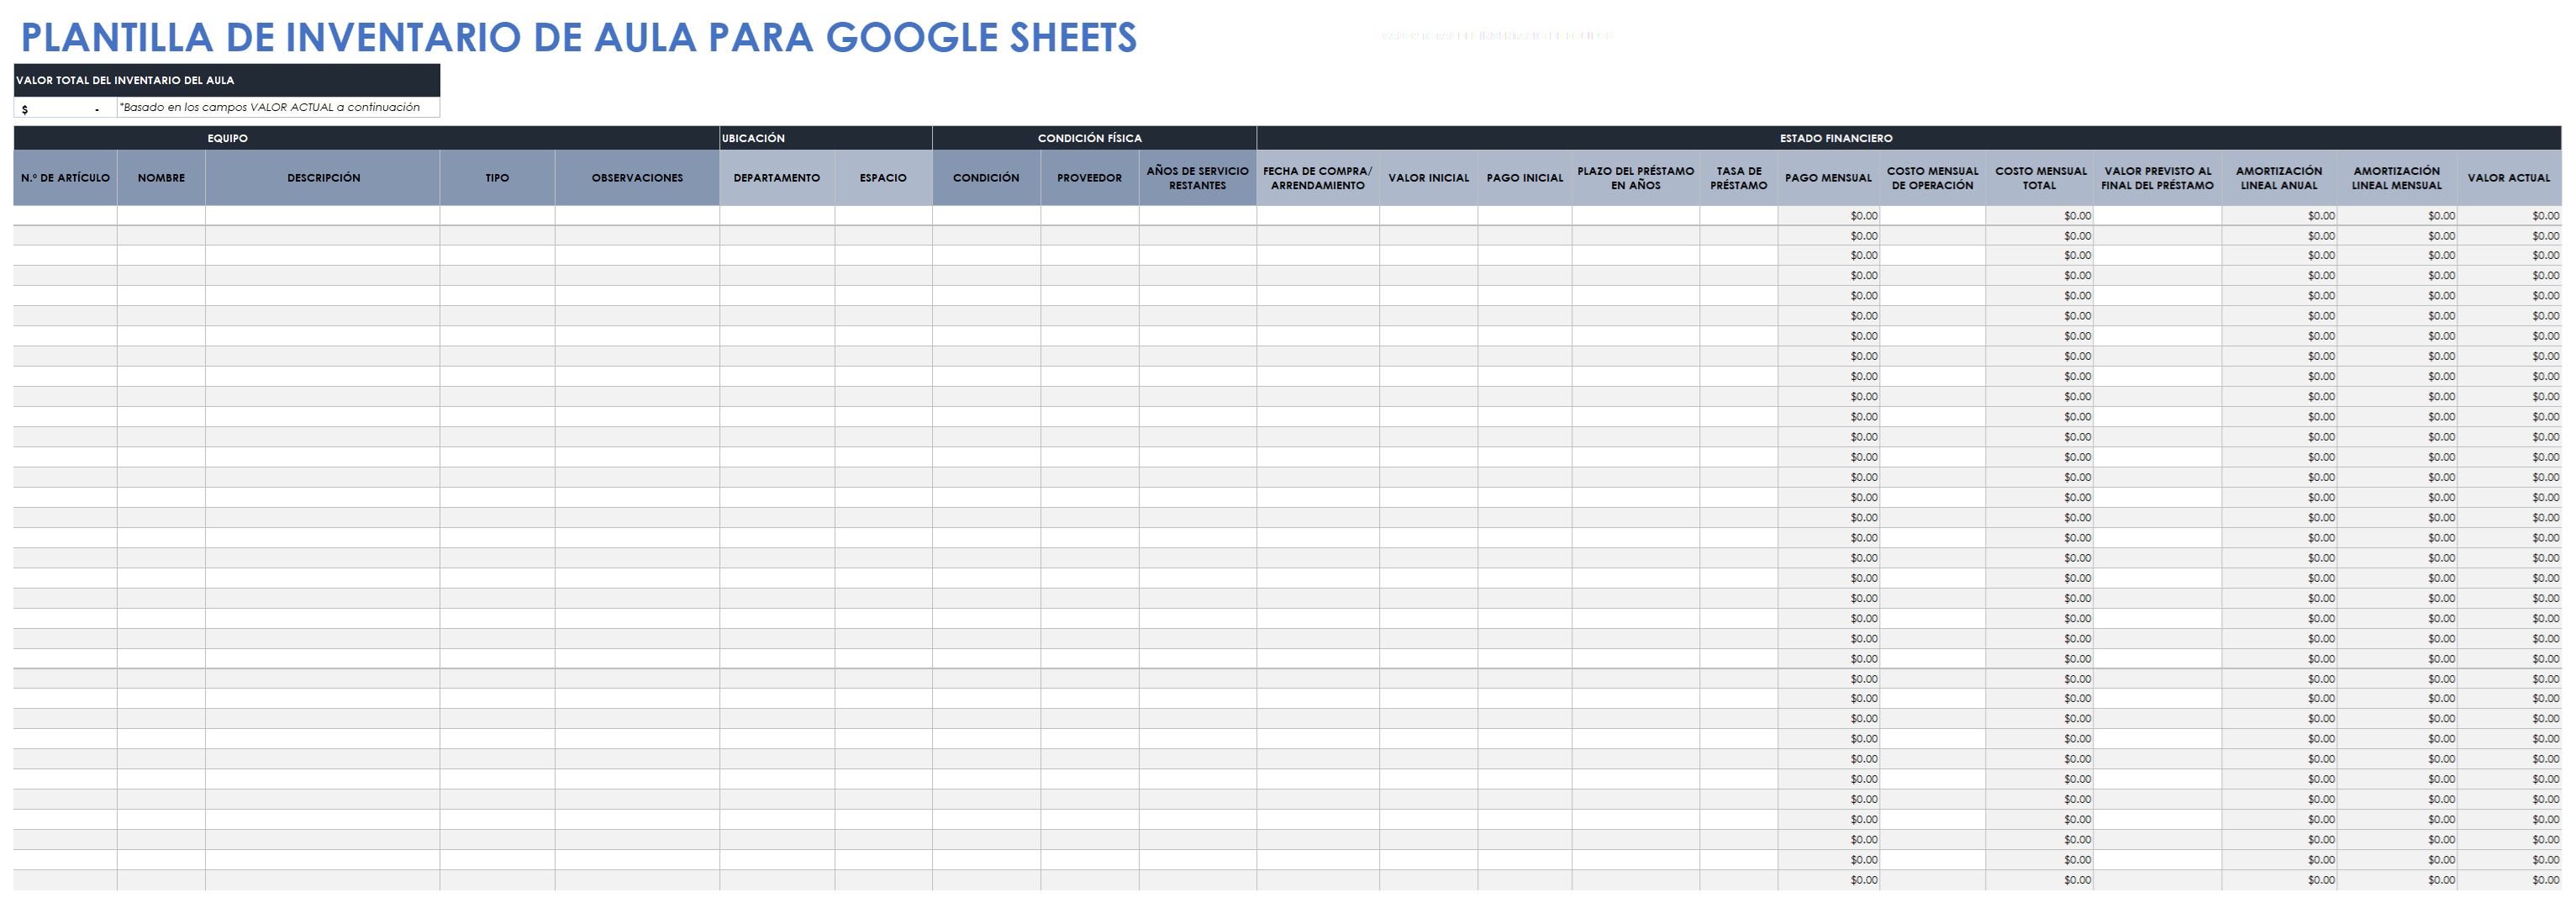  Plantilla de inventario de aula de Google Sheets